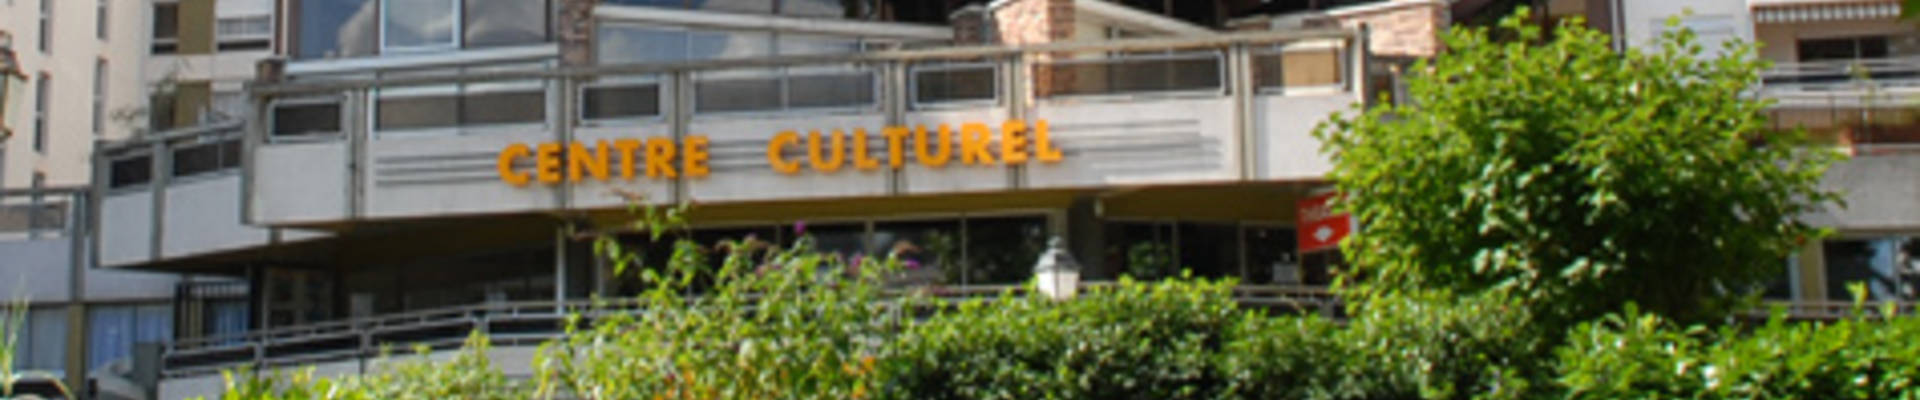 Centre Culturel de Courbevoie